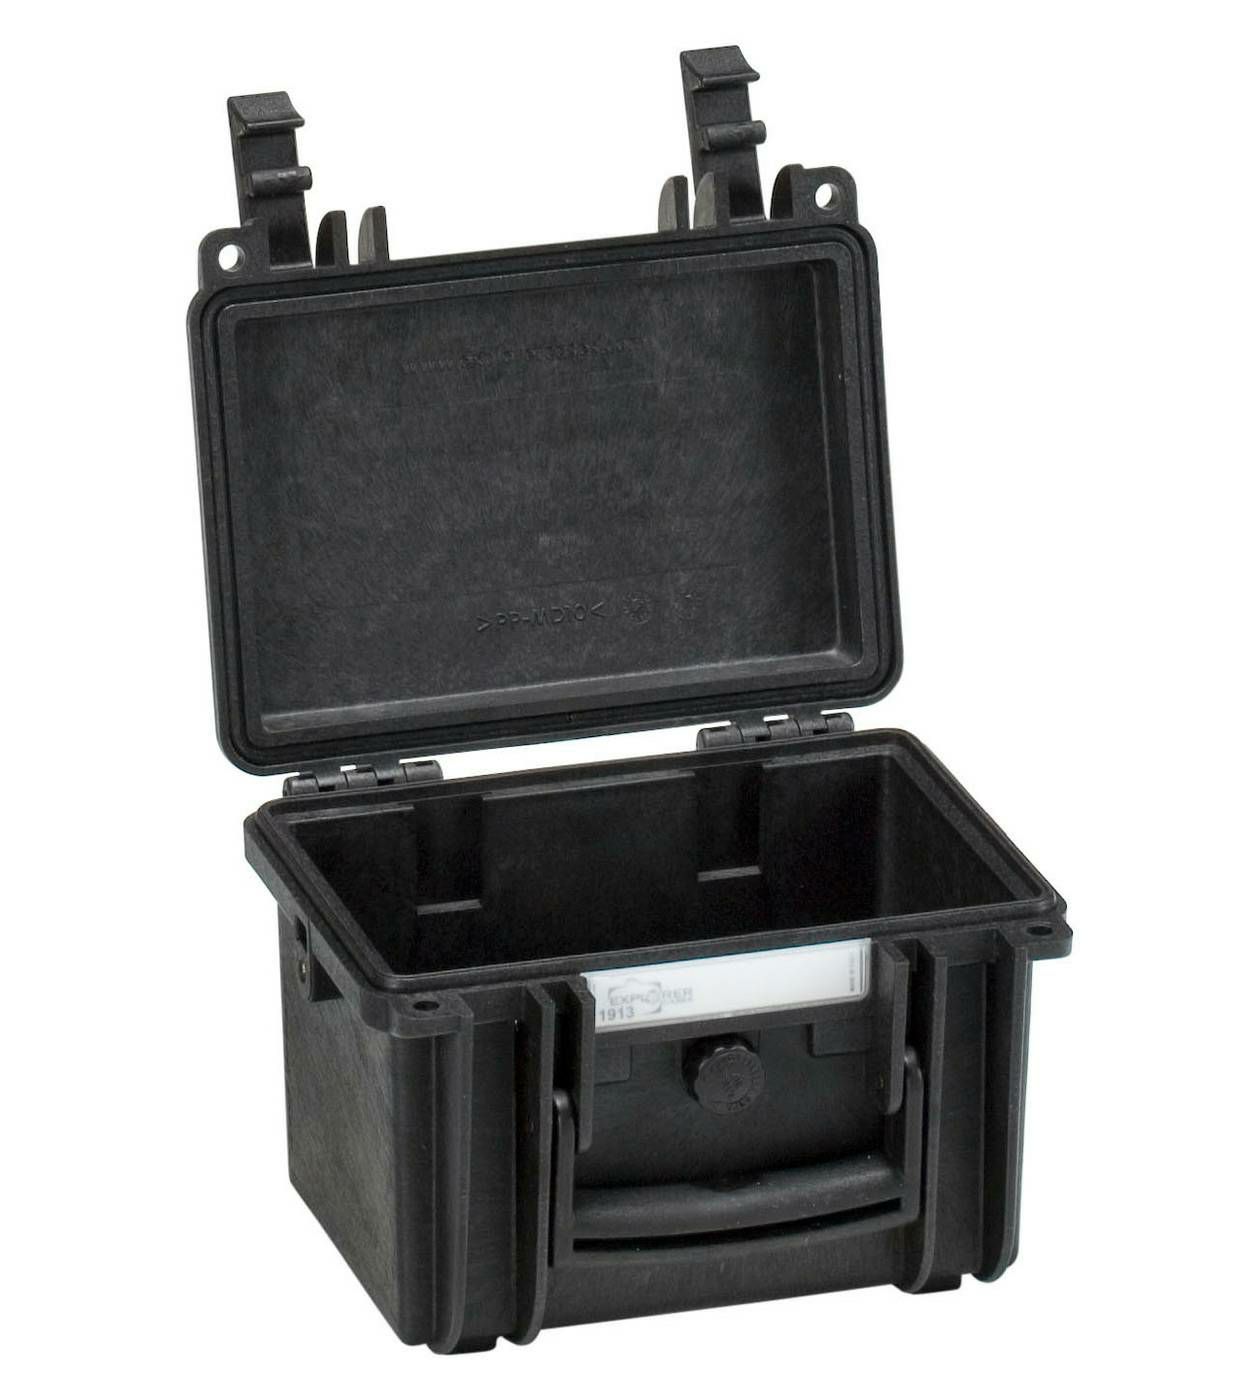 Explorer Cases 1913 Black Foam 216x180x152mm kufer za foto opremu kofer Camera Case